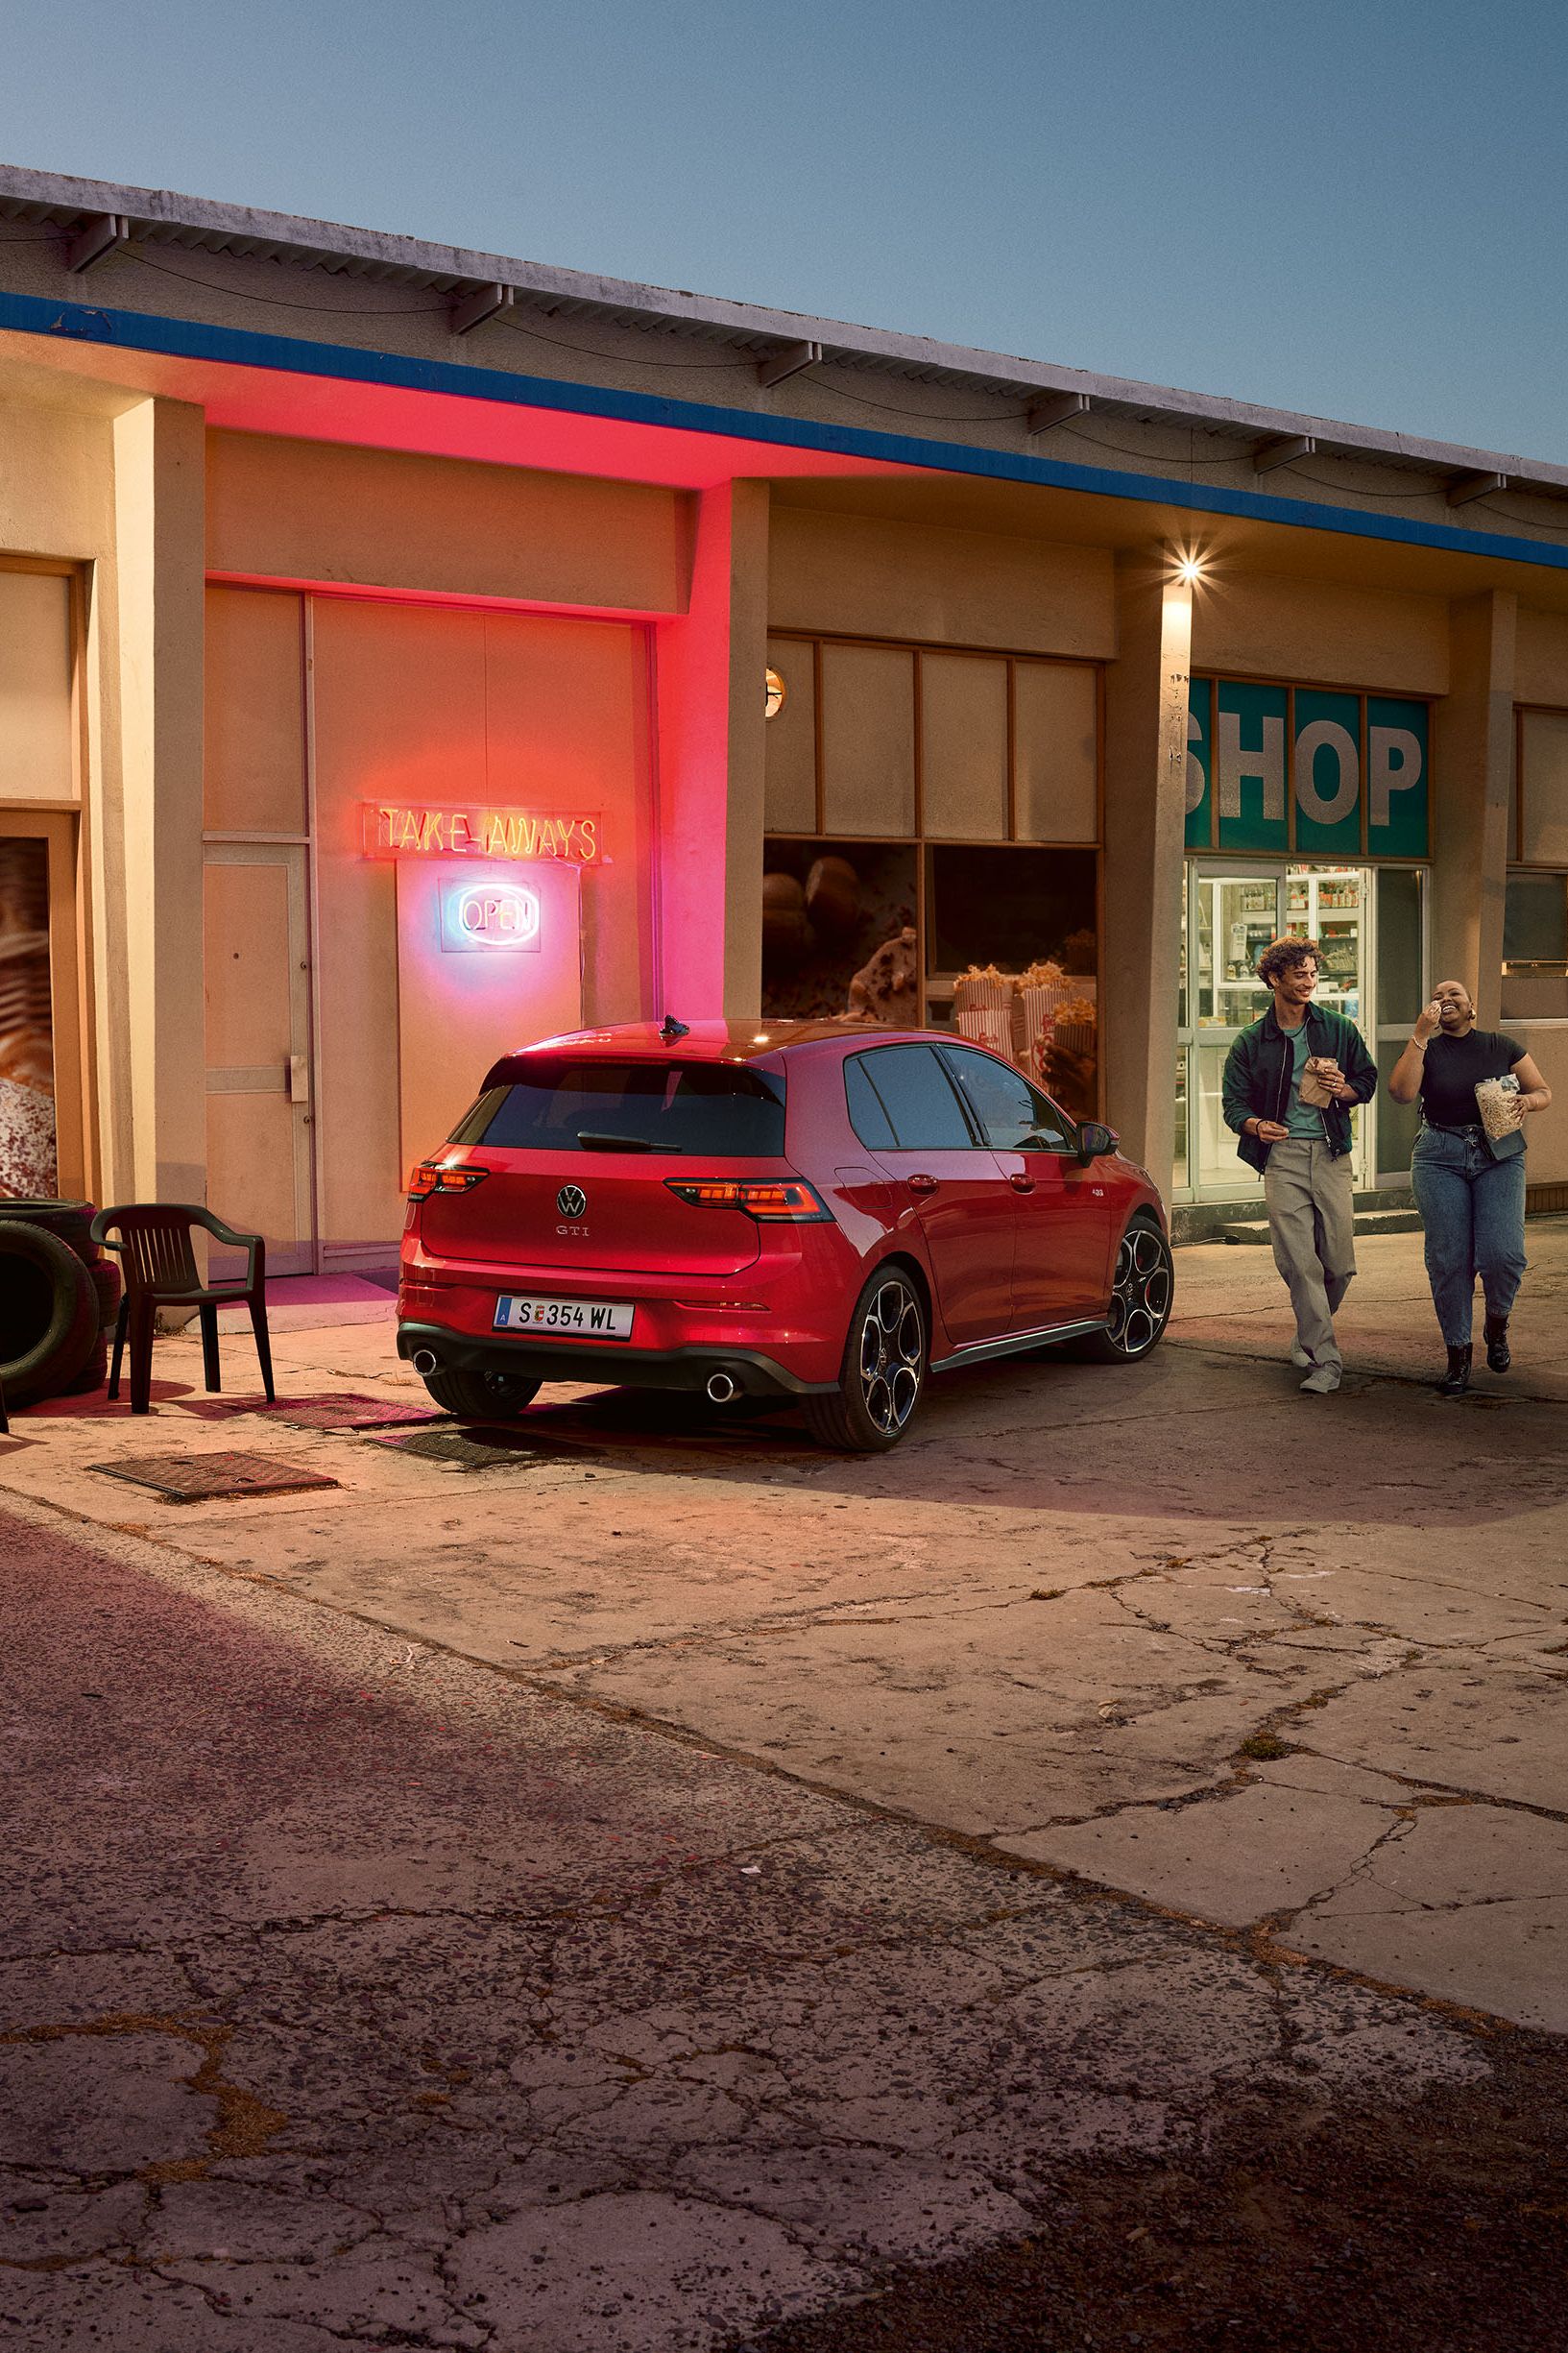 Heckansicht eines roten VW Golf GTI in abendlicher Stimmung, zwei Personen gehen neben ihm her